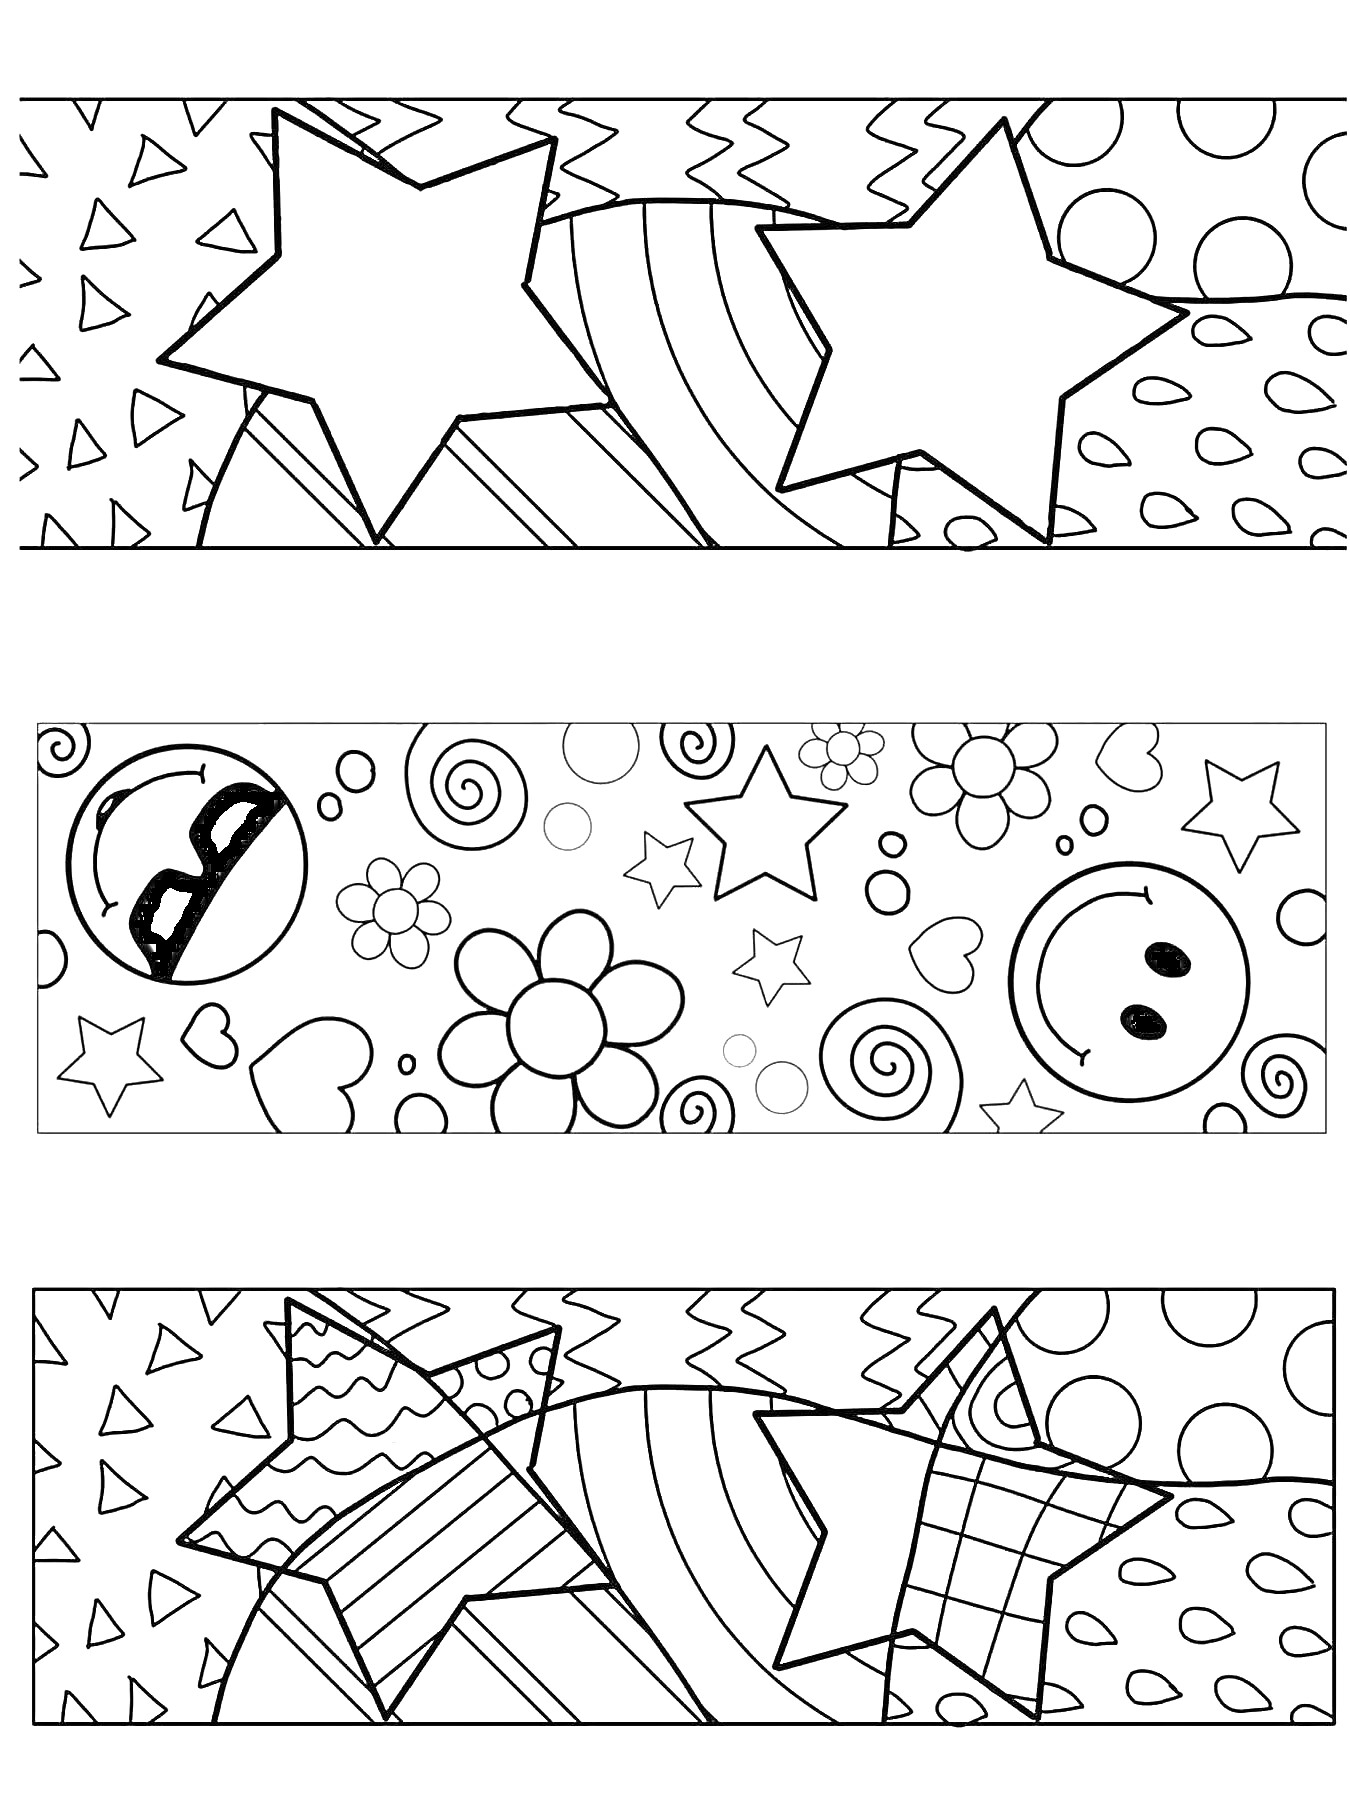 На раскраске изображено: Закладки, Звезды, Цветы, Смайлы, Абстрактные узоры, Геометрические формы, Зигзаги, Спираль, Круги, Сердца